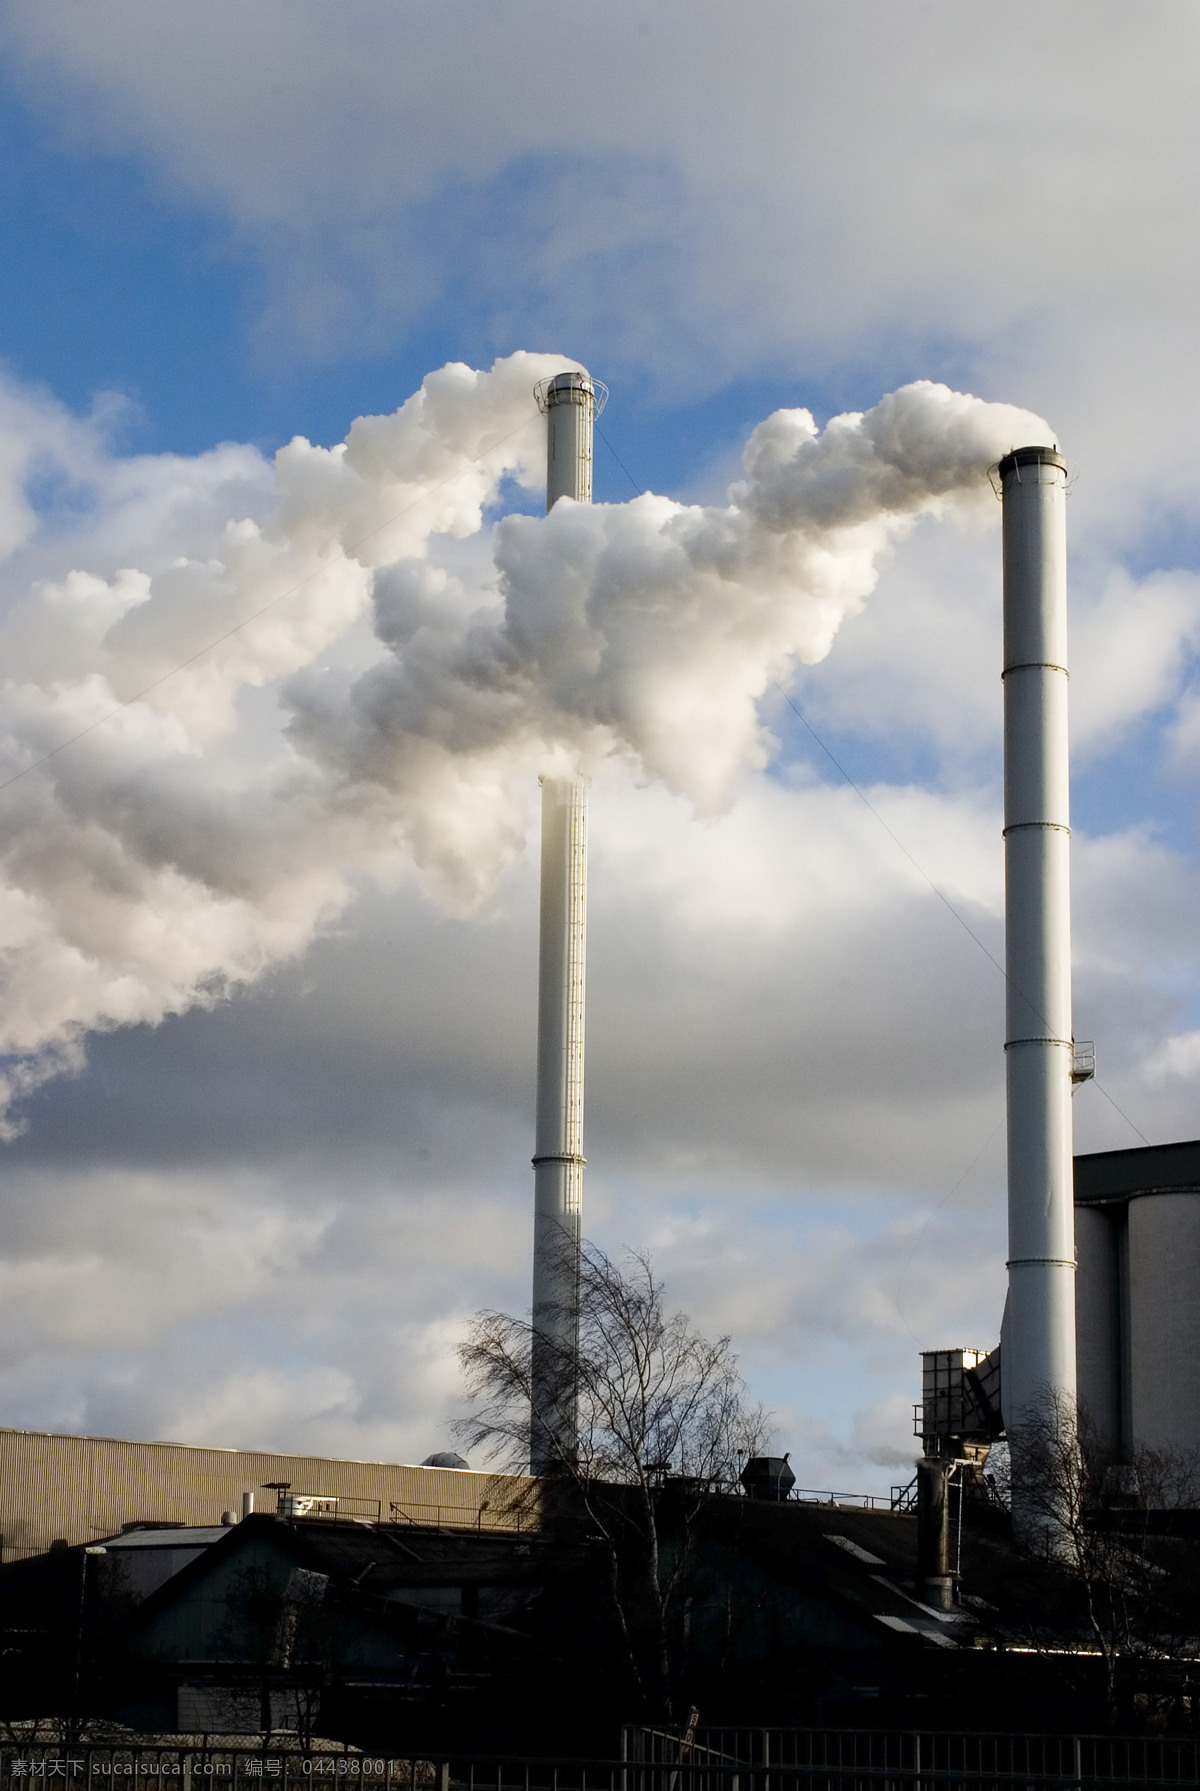 工业基地风光 工业基地 工厂 厂房 烟筒 烟囱 冒烟 烟雾 蓝天 污染环境 重工业 工业生产 现代科技